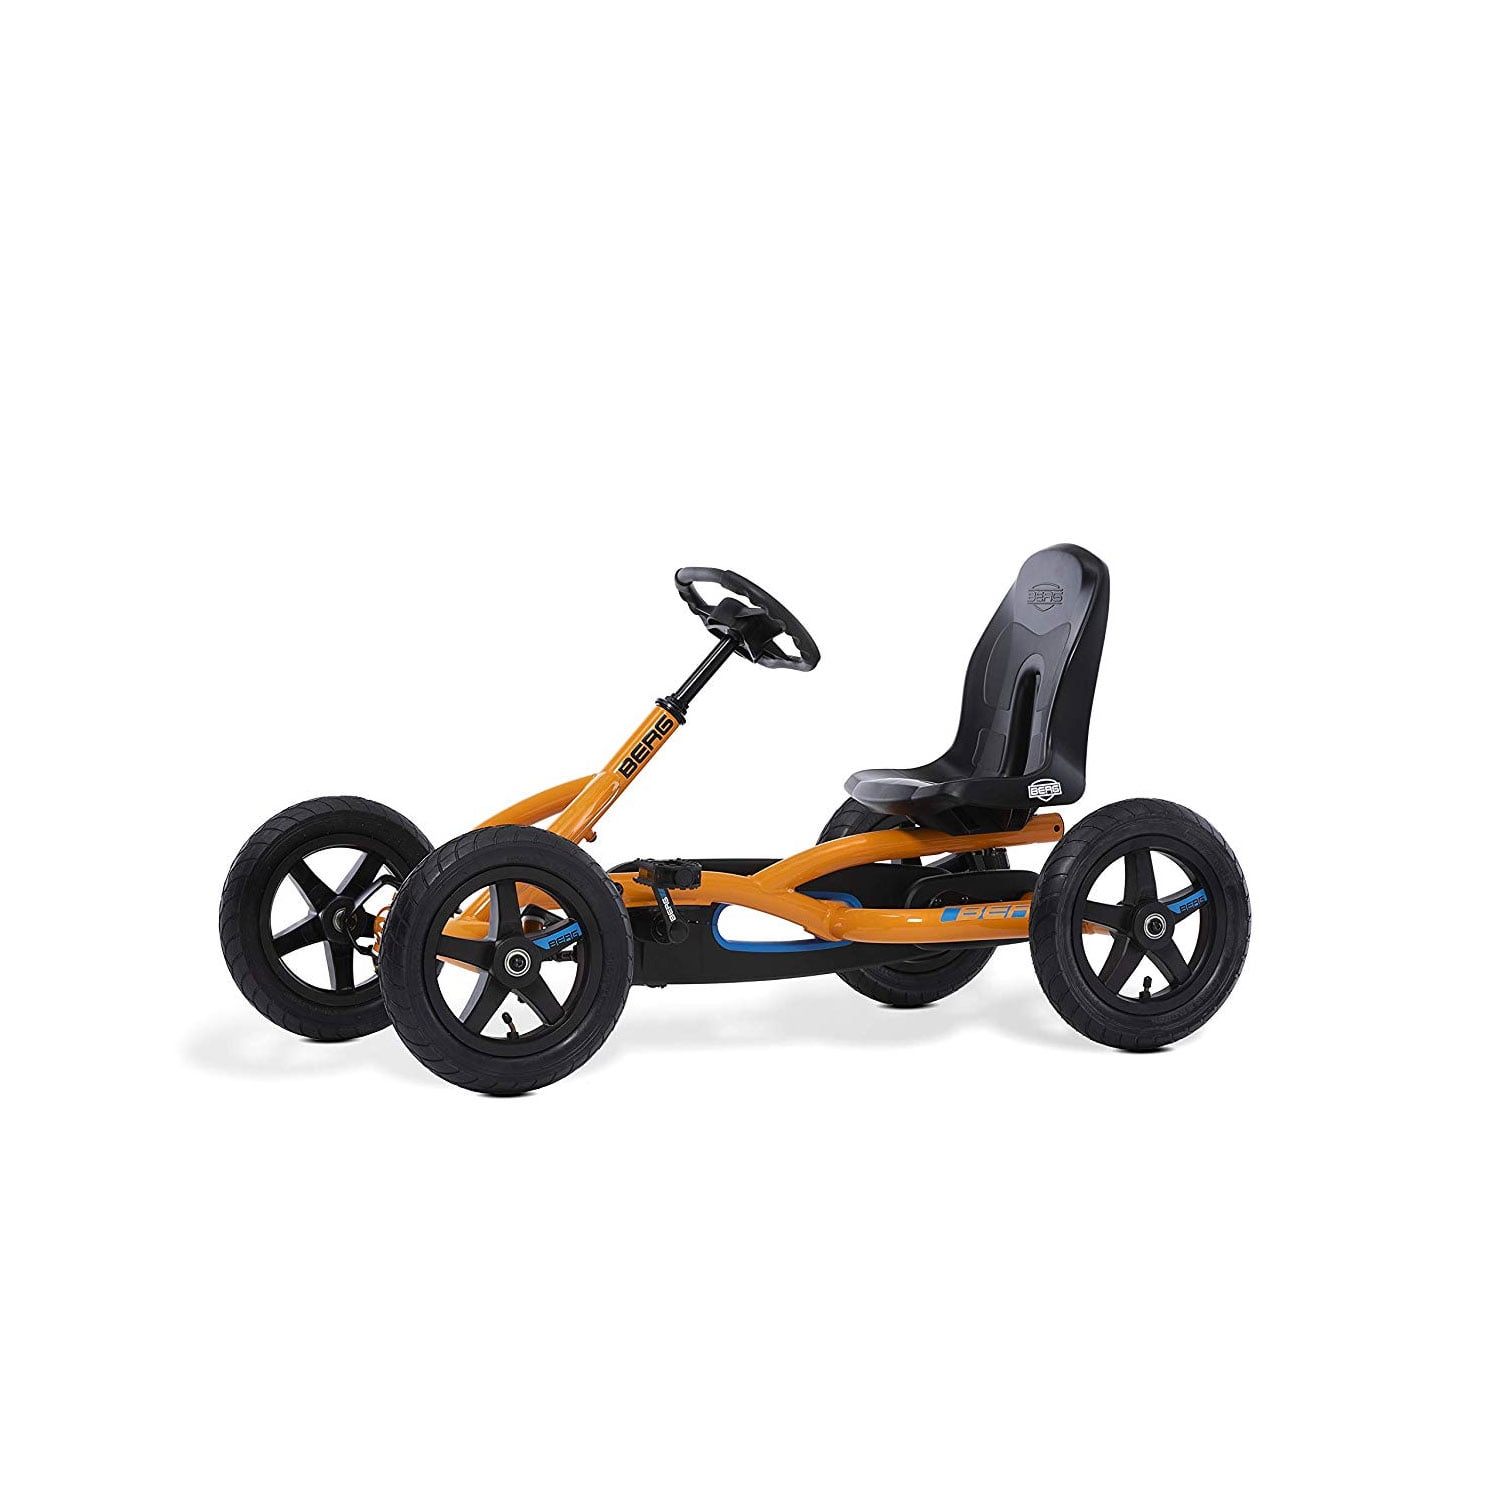 Mooie vrouw begroting Luchtvaartmaatschappijen BERG Toys Orange Go Kart Ride-On Pedal Car - Walmart.com